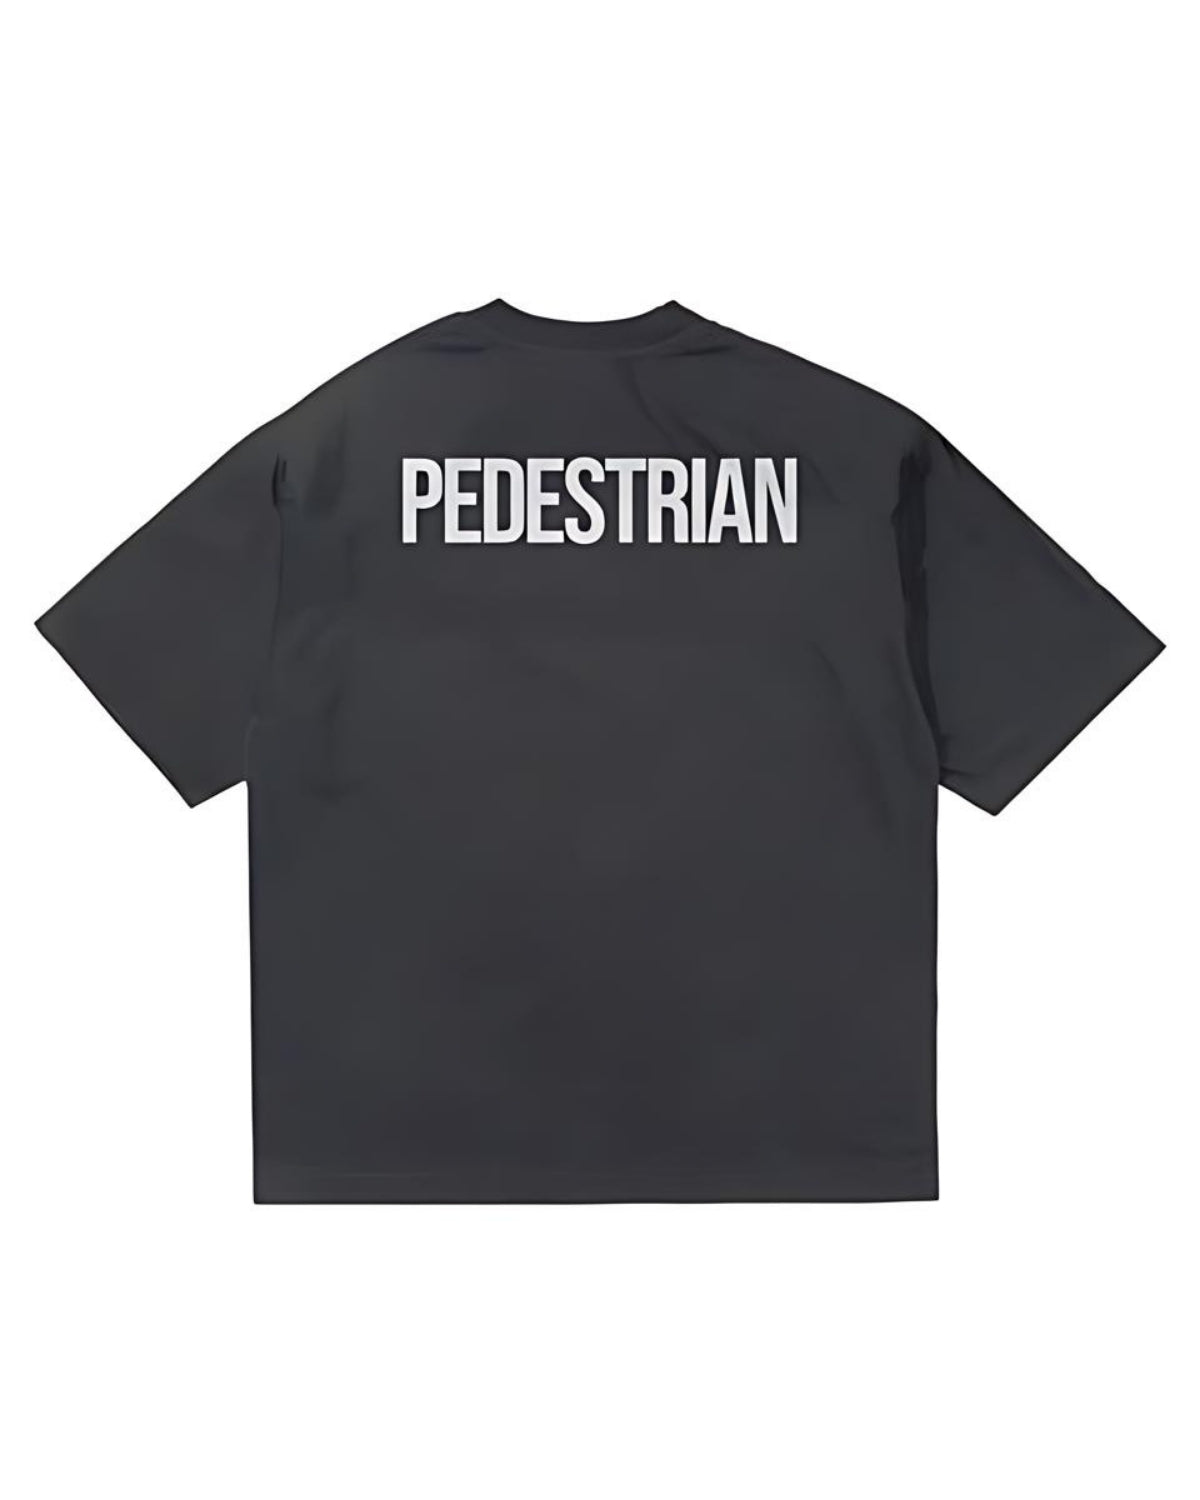 Pedestrian - Black